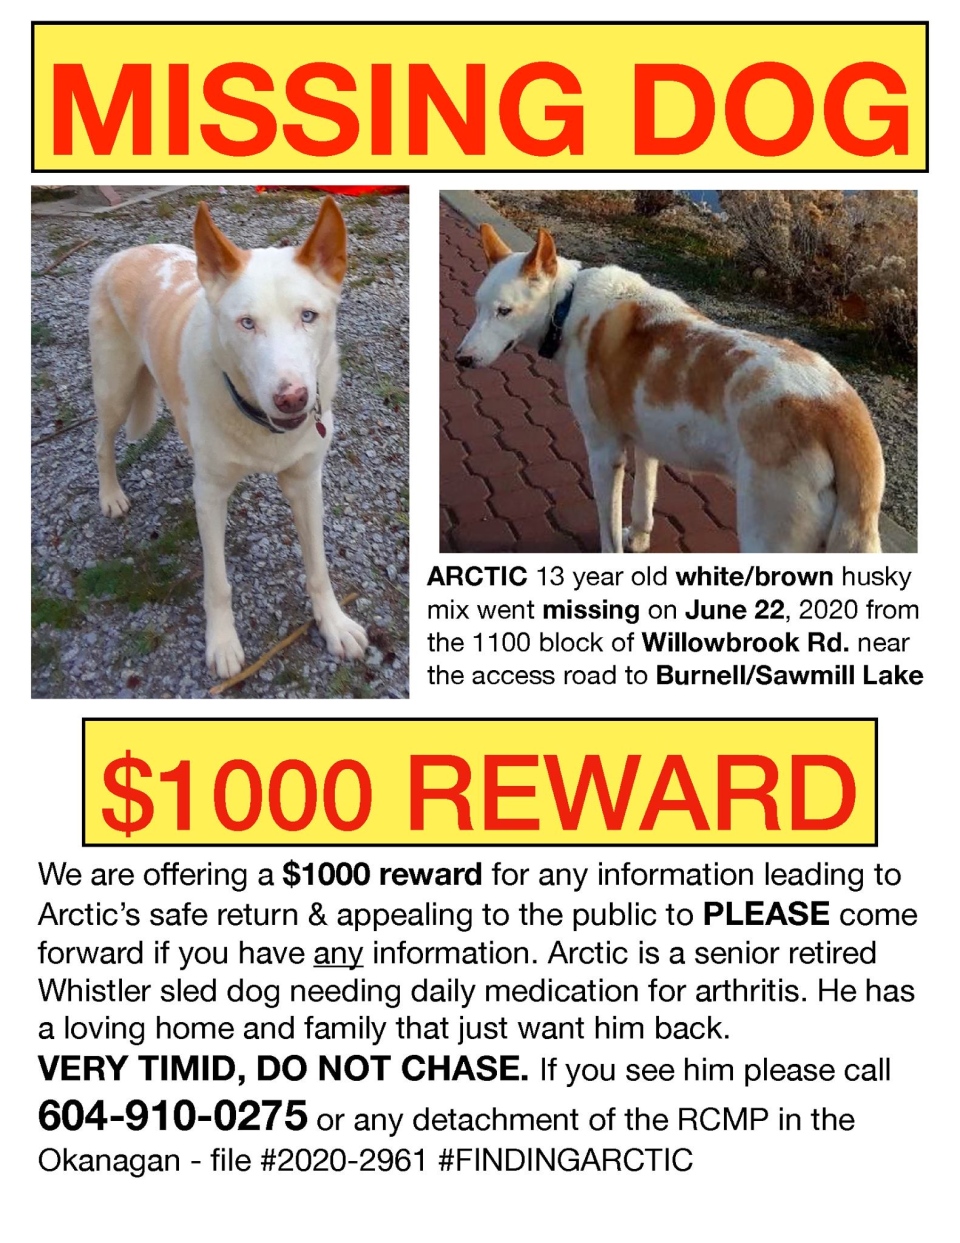 Missing dog poster